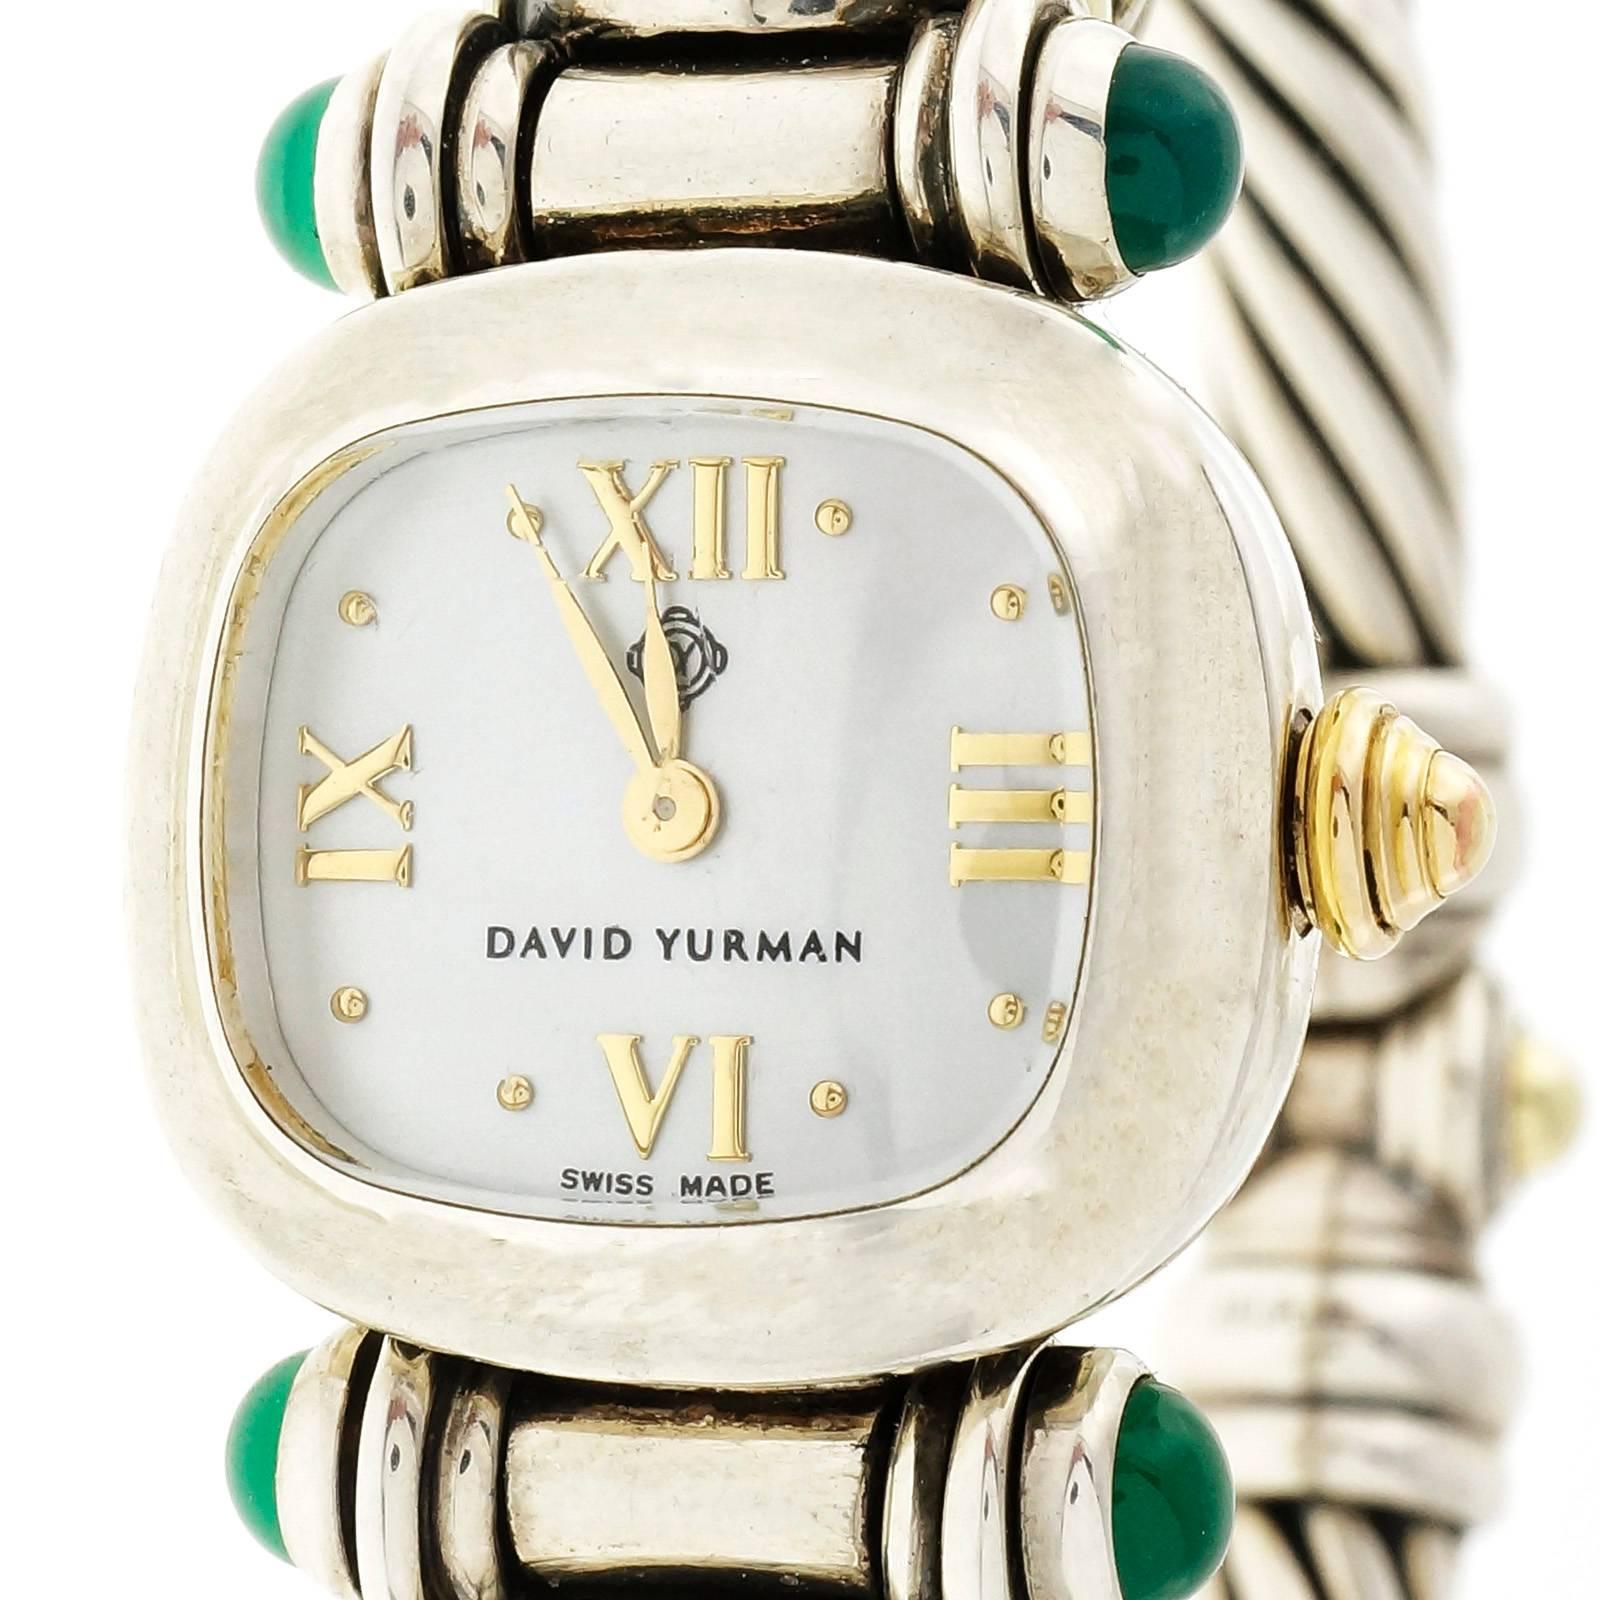 David Yurman  Montre-bracelet à câble en argent et or jaune 14k, Tourmaline verte améthyste, mouvement à quartz entièrement révisé. Cadran original en nacre. Convient à un poignet de 7 pouces. 

2 Améthyste carrée 4.45 x 5mm
4 cabochons ronds de